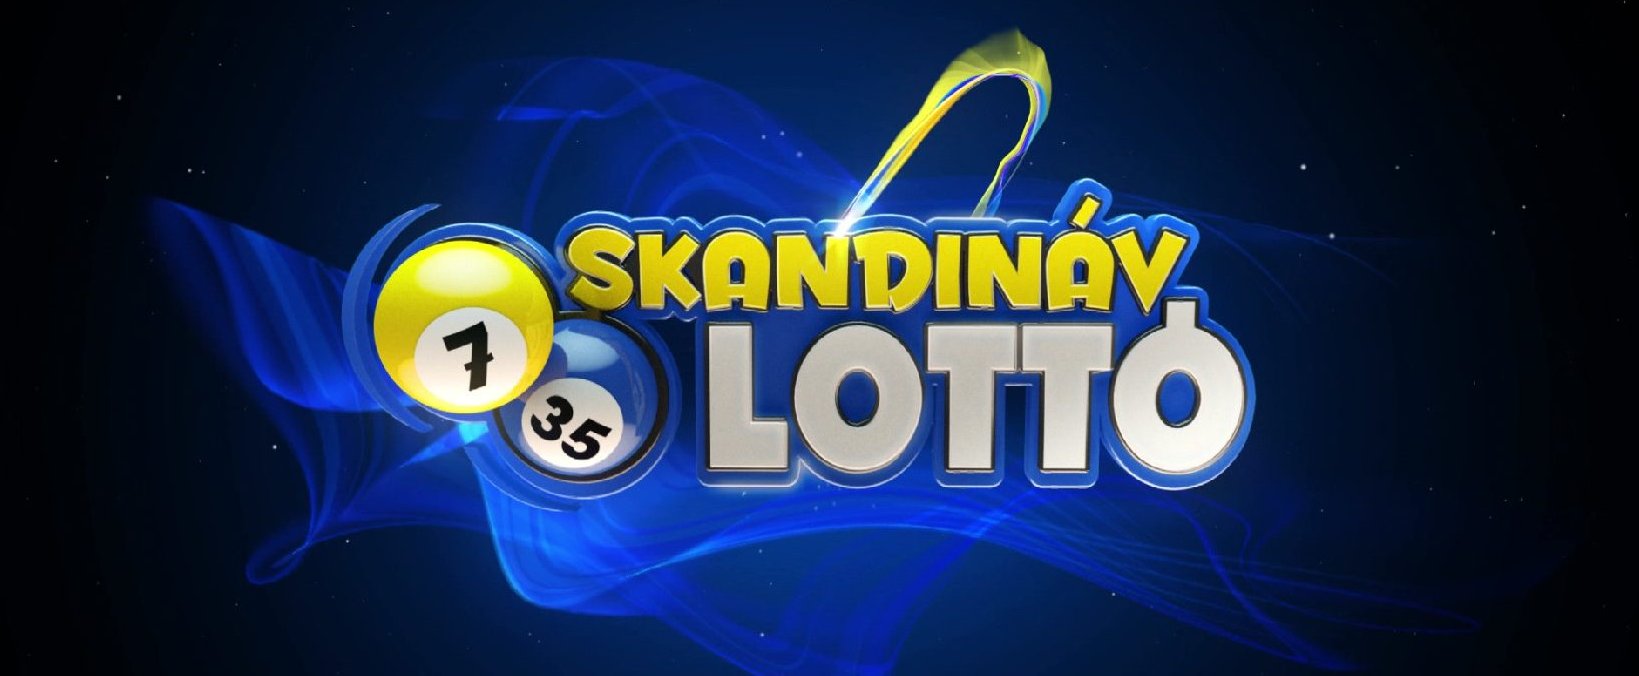 Ez a két bűvös számsor repíthetett közel valakit ahhoz, hogy milliomos legyen – mutatjuk a Skandináv lottó nyerőszámait